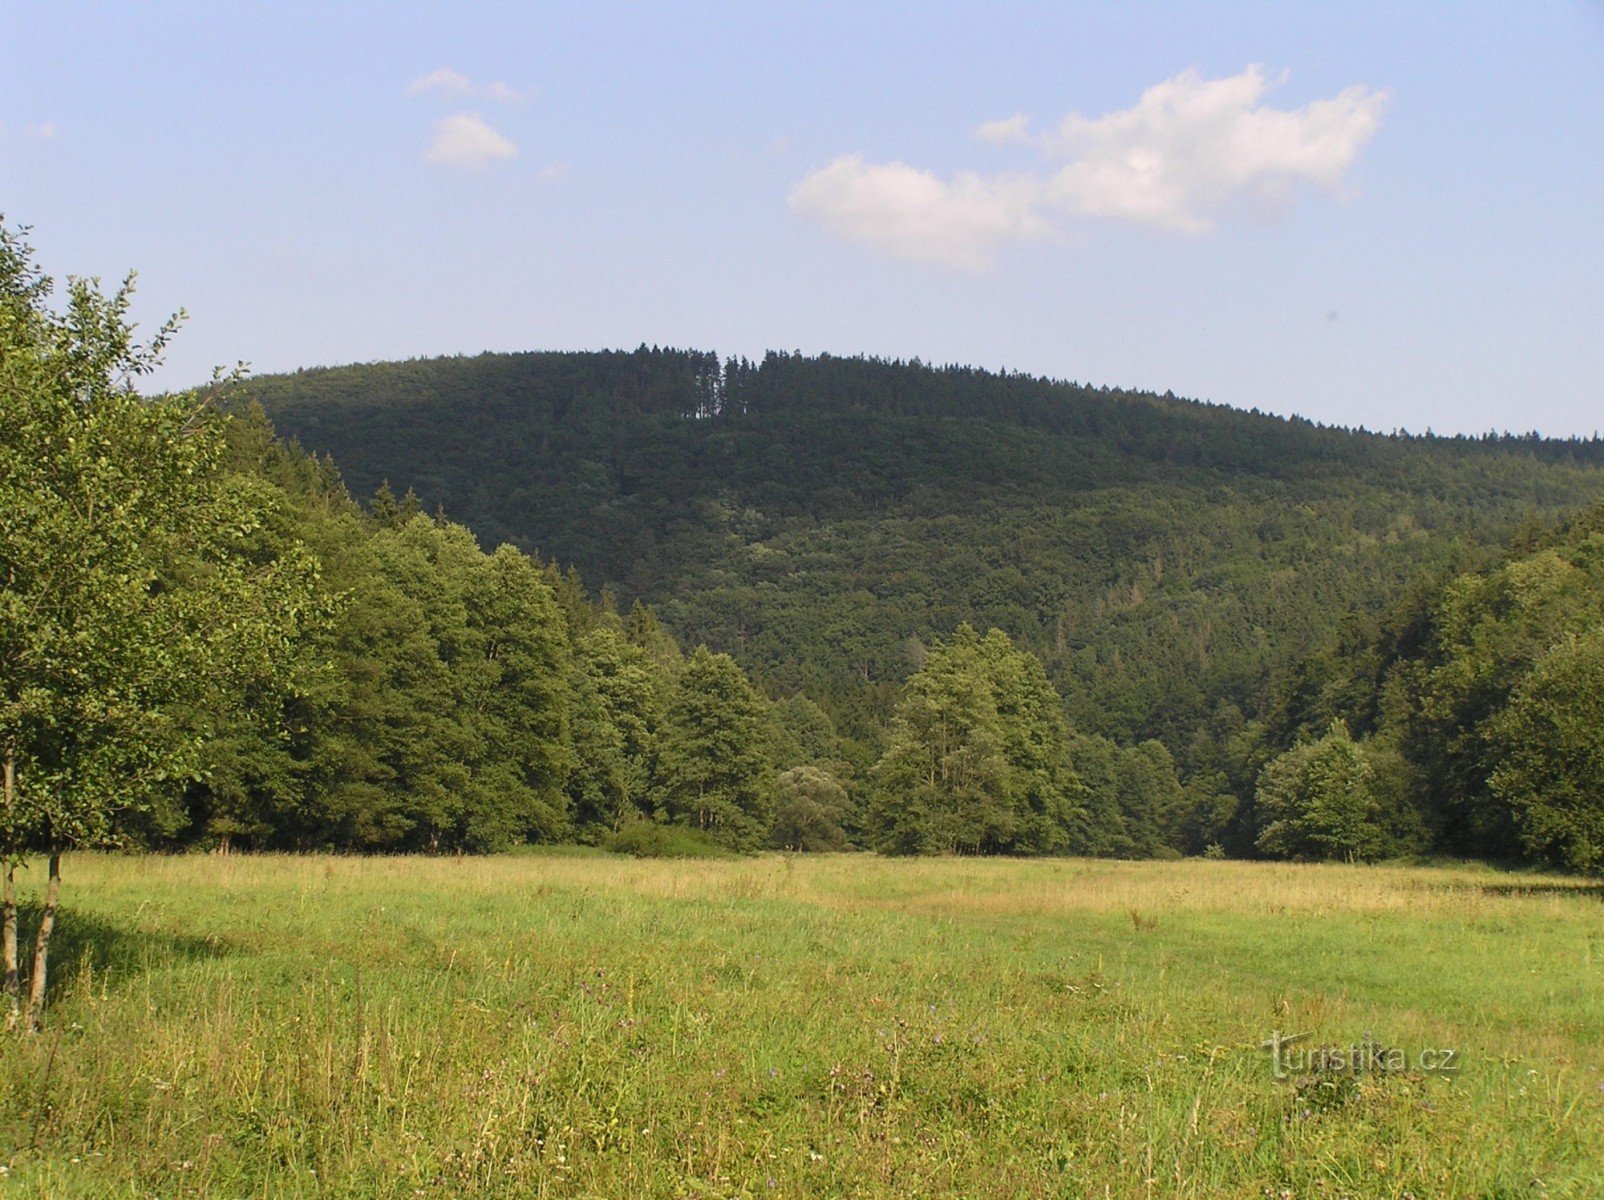 θέα από την κοιλάδα Moravice έως το λόφο Valach (το αποθεματικό βρίσκεται στην πλαγιά του)